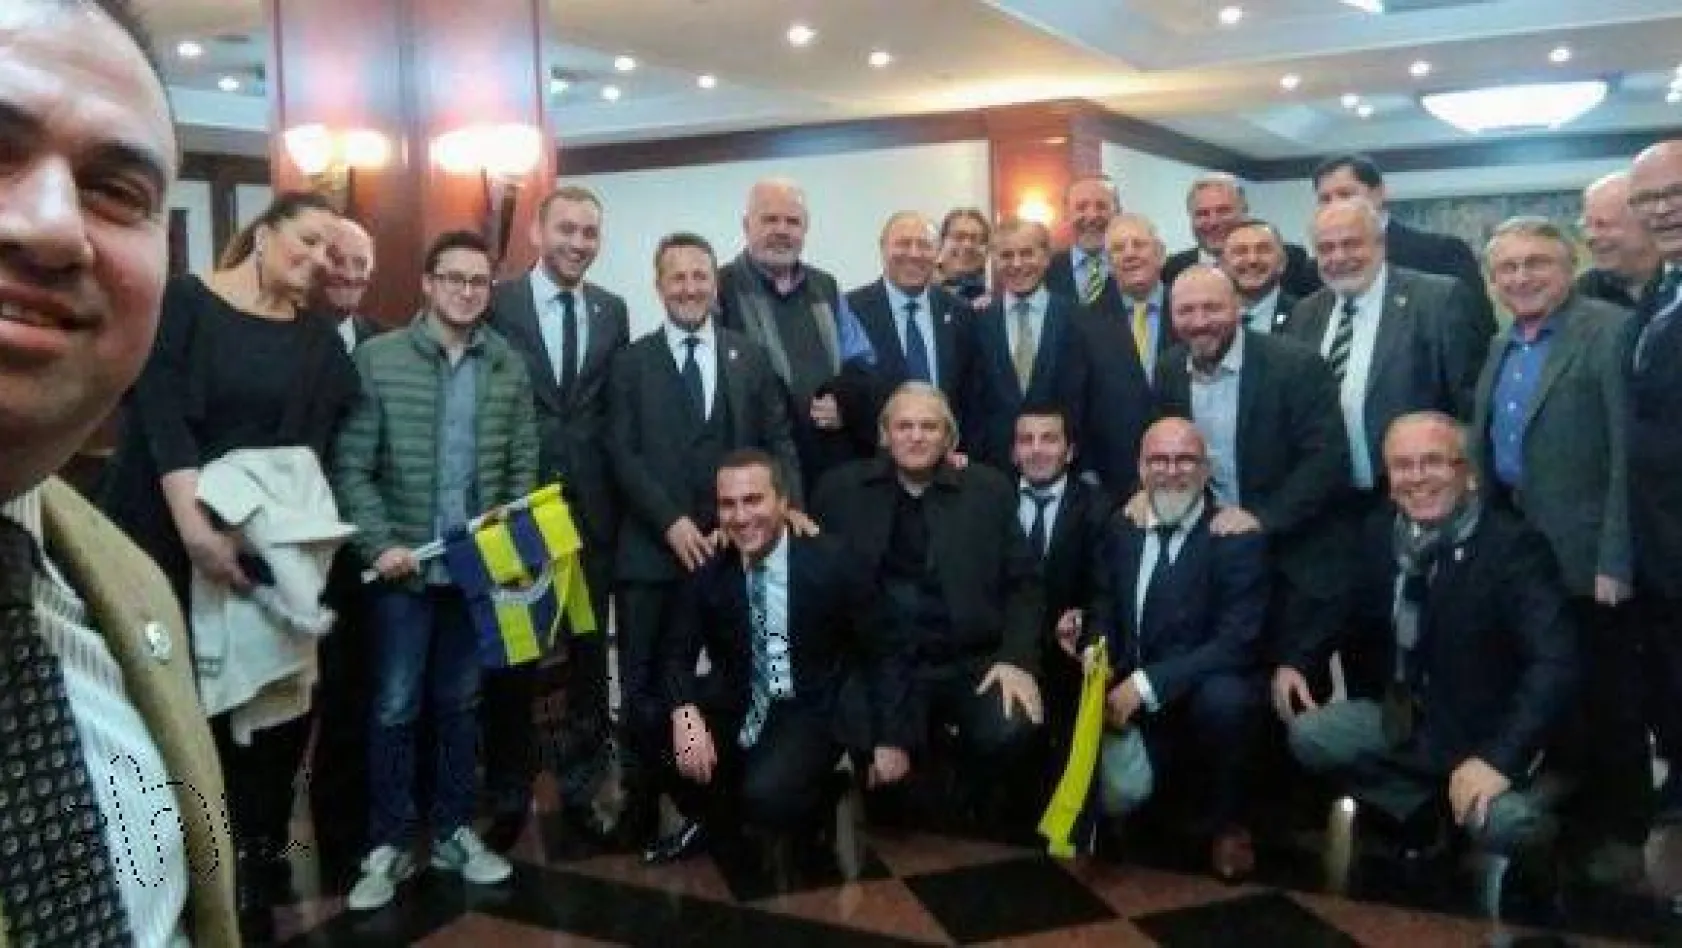 Fenerbahçe Başkanı Aziz Yıldırım, Seçimler İçin Adaylık Sinyali Verdi